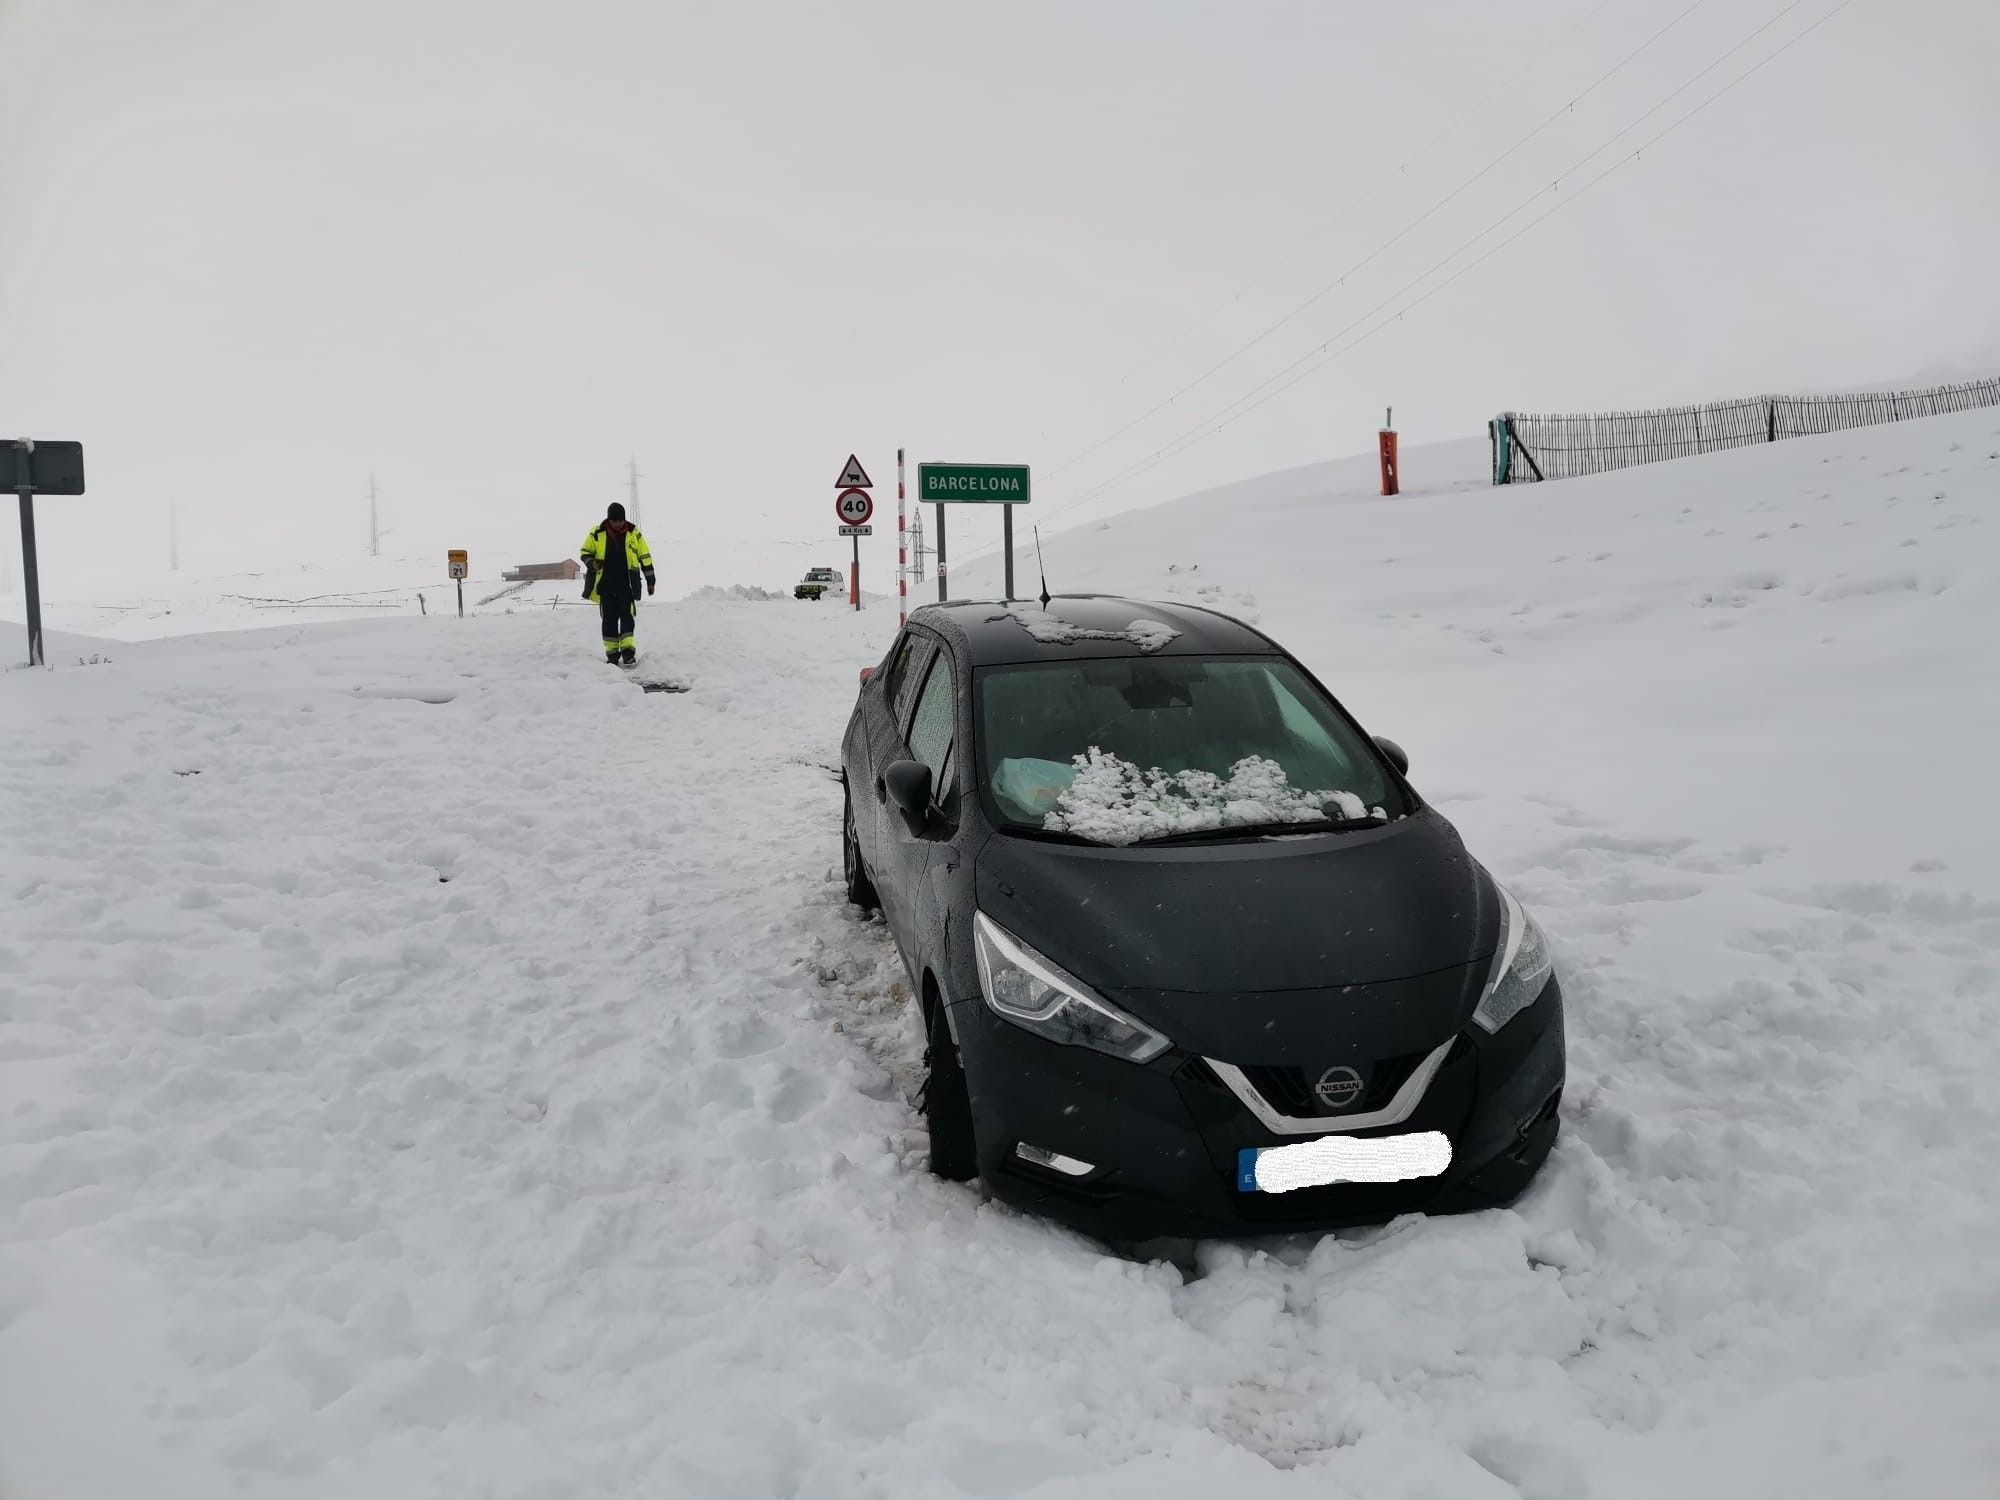 Familia Cornellà se salta confinamiento para ir a la nieve / Mossos d'Esquadra